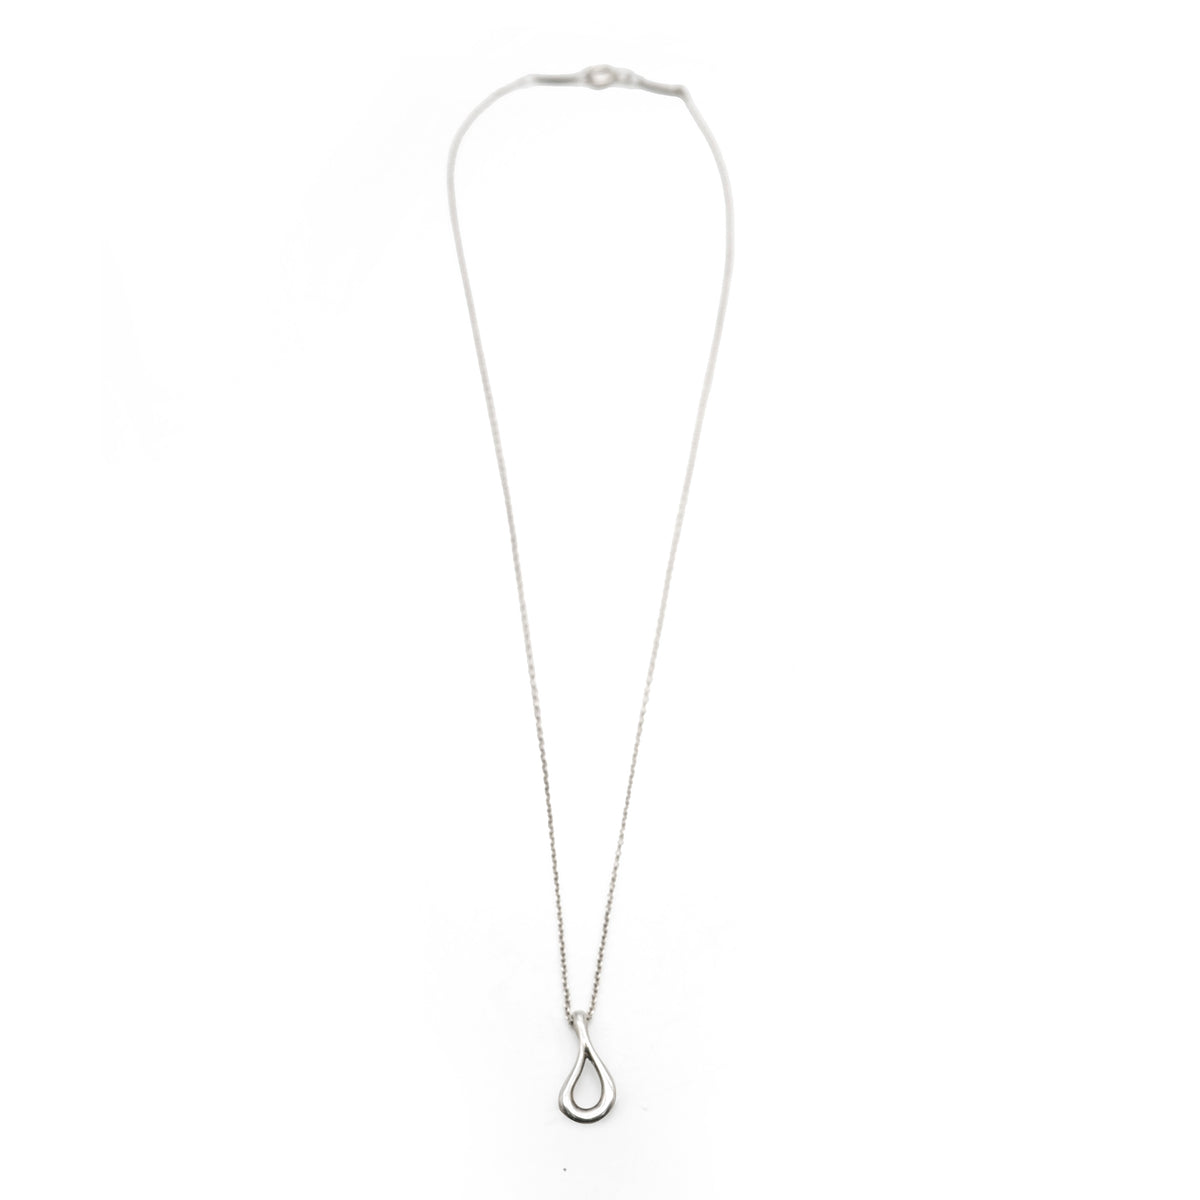 Elsa Peretti Open Teardrop Pendant Necklace in Sterling Silver